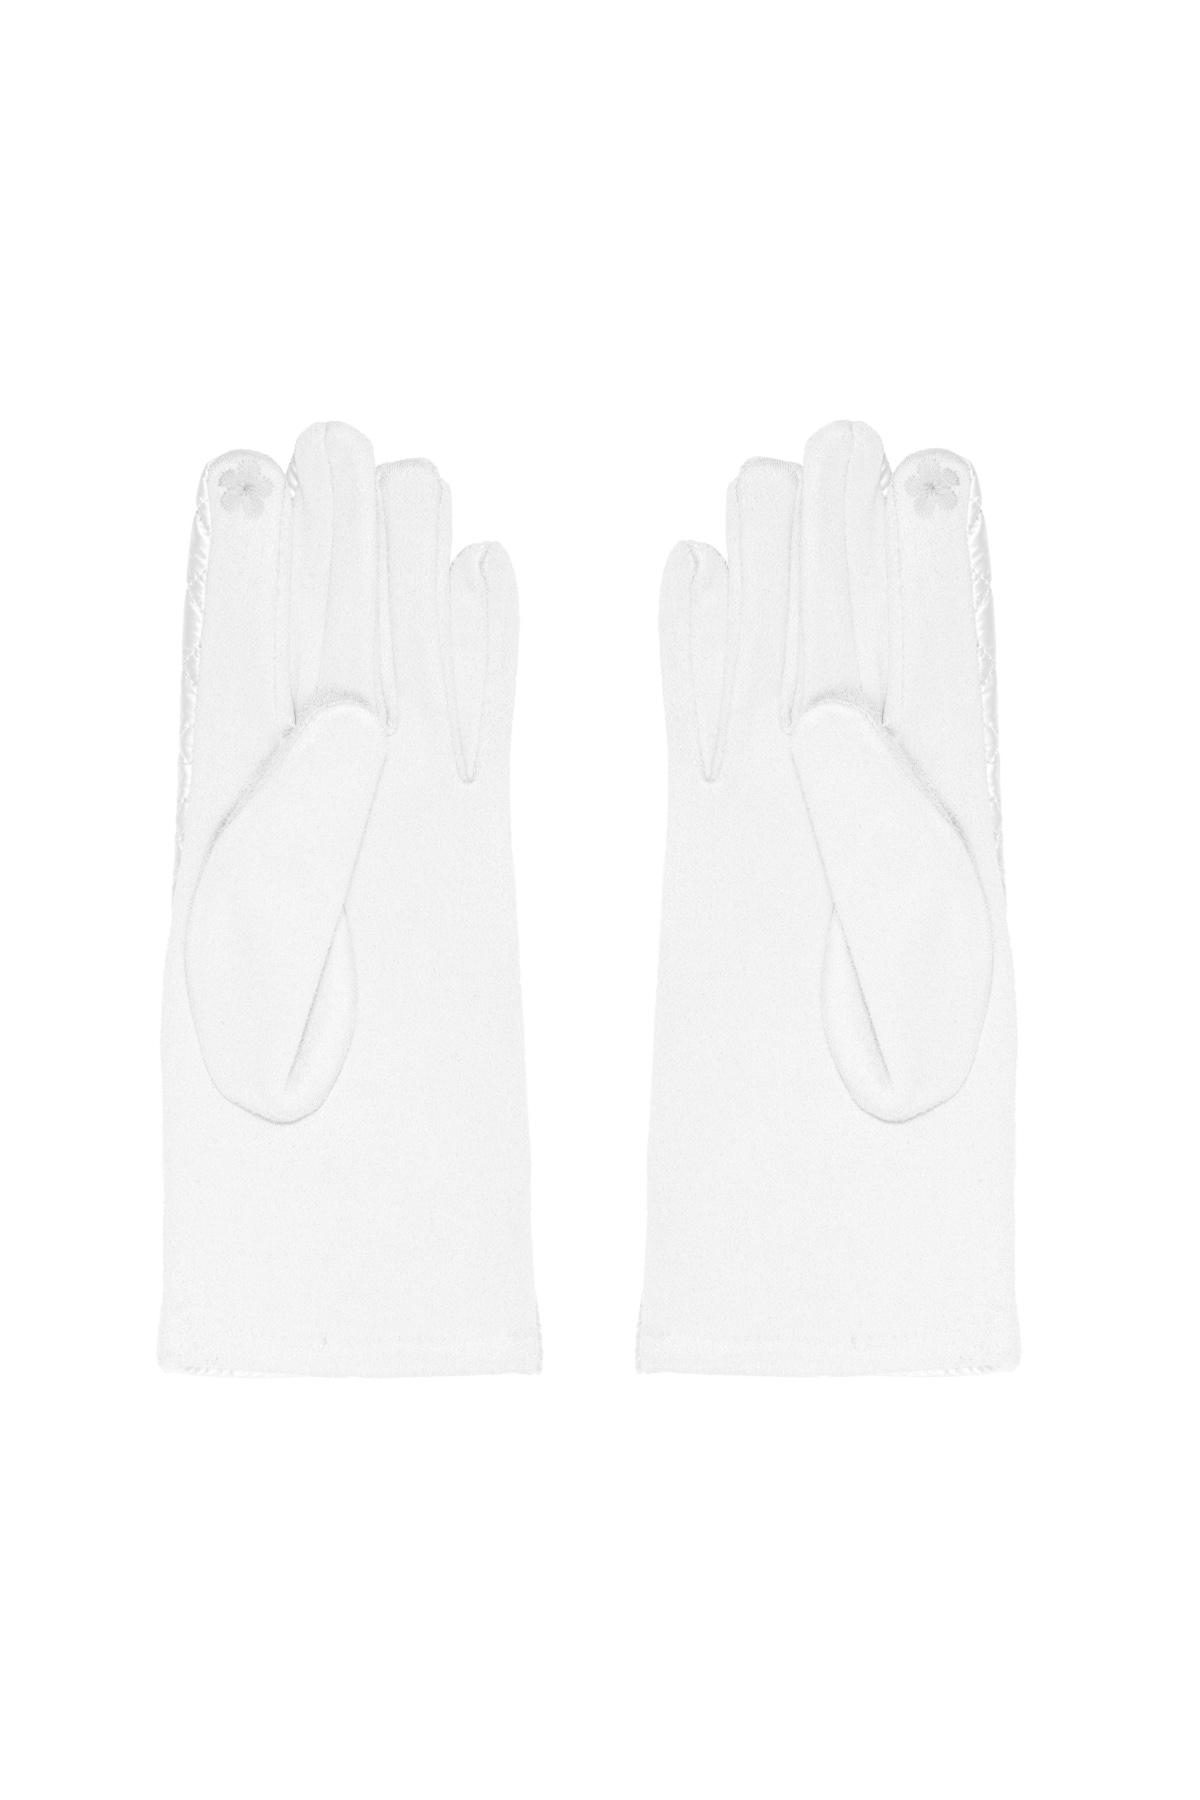 Handschuhe mit genähtem Muster - weiß Bild3